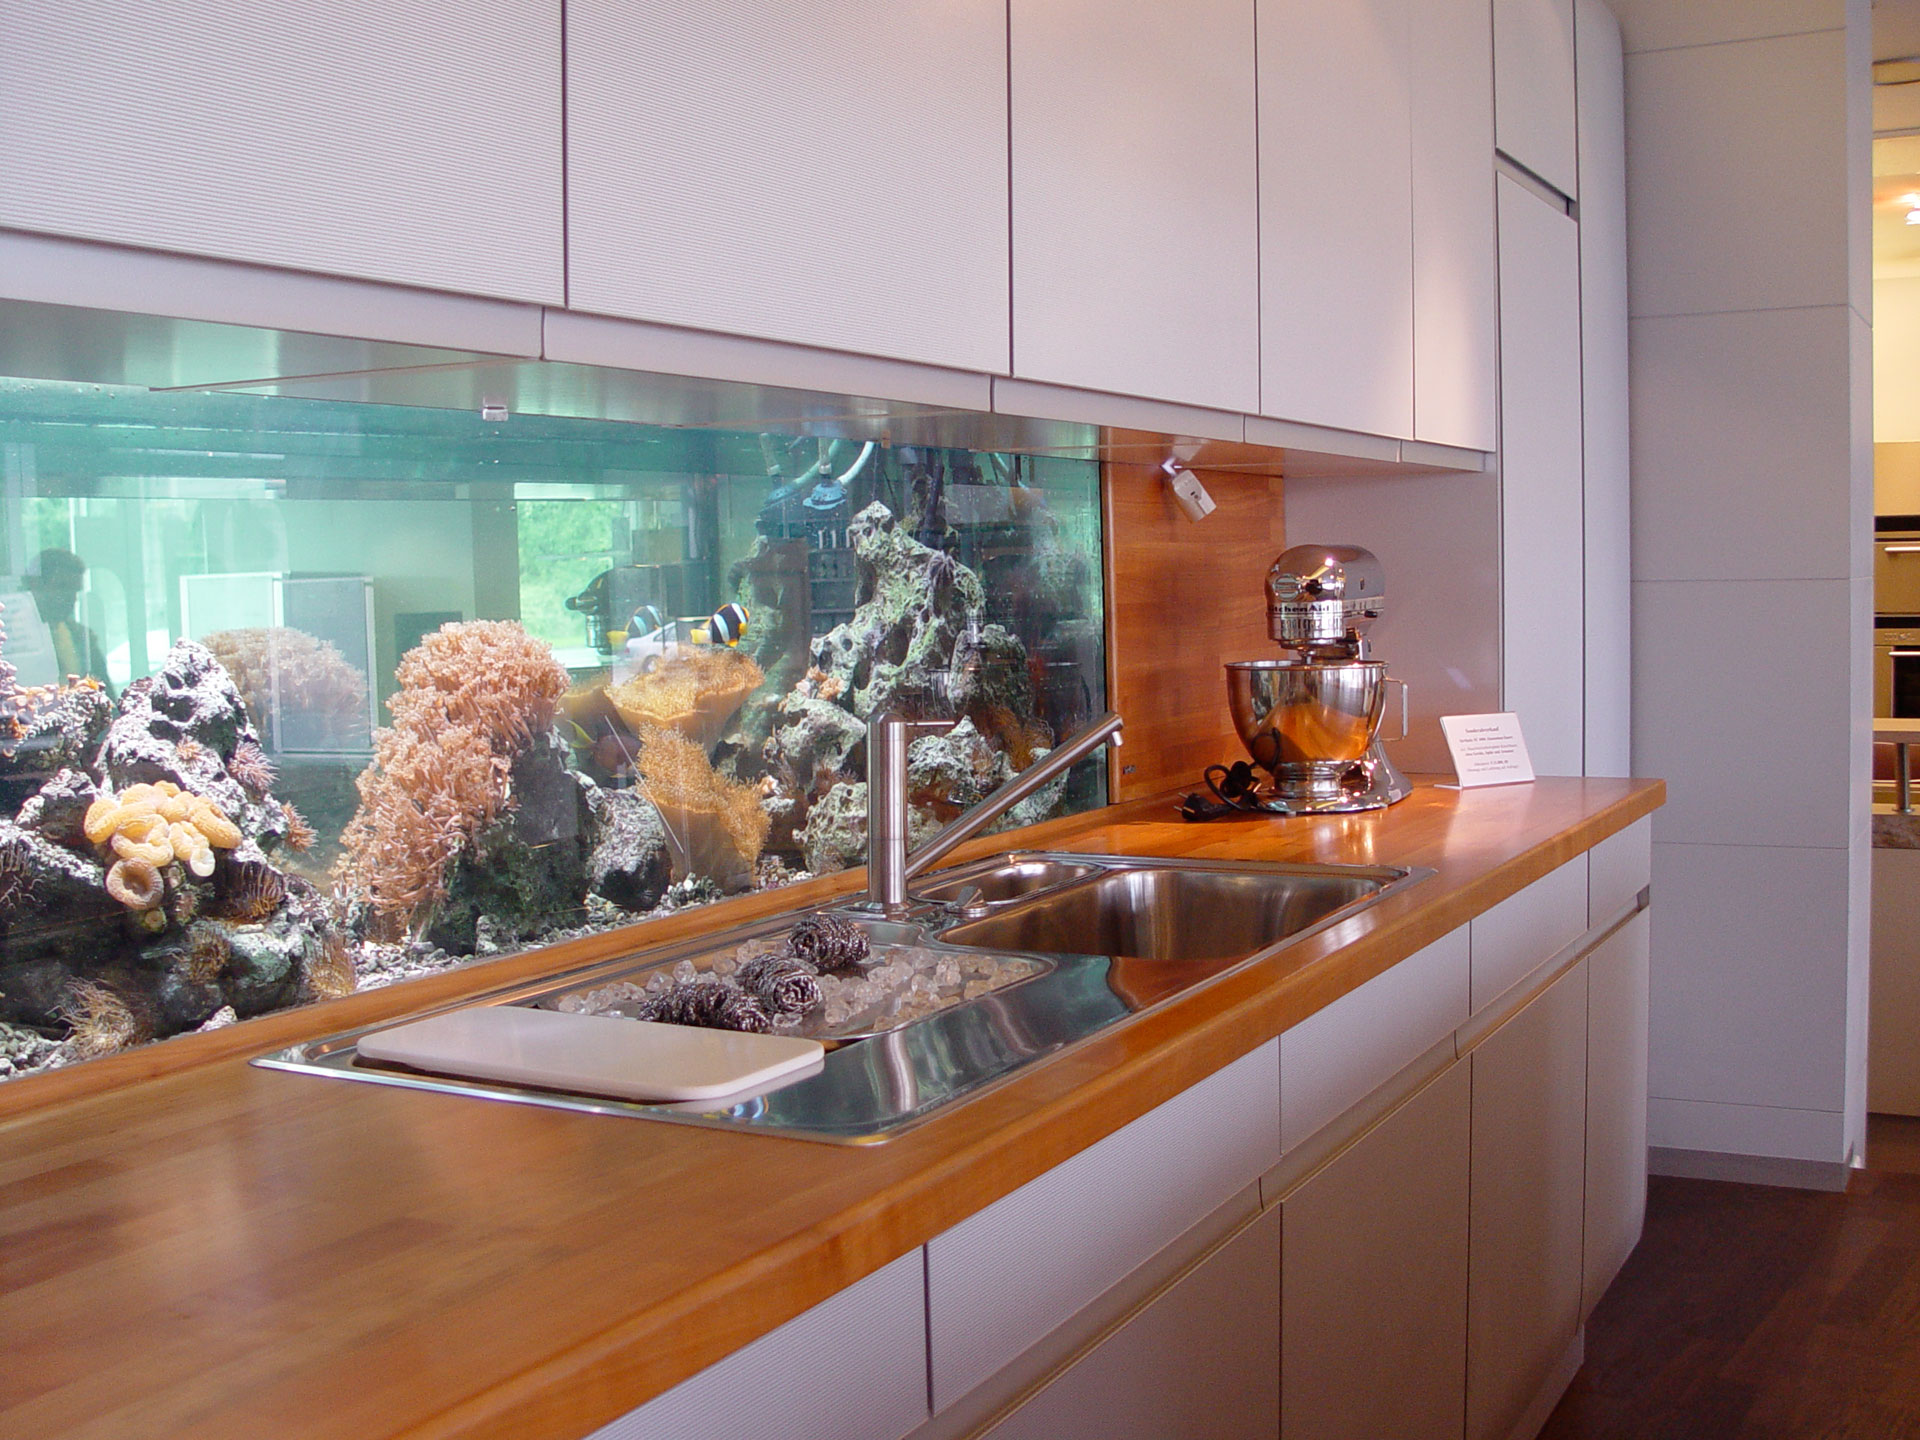 Meerwasseraquaristik im Küchenstudio